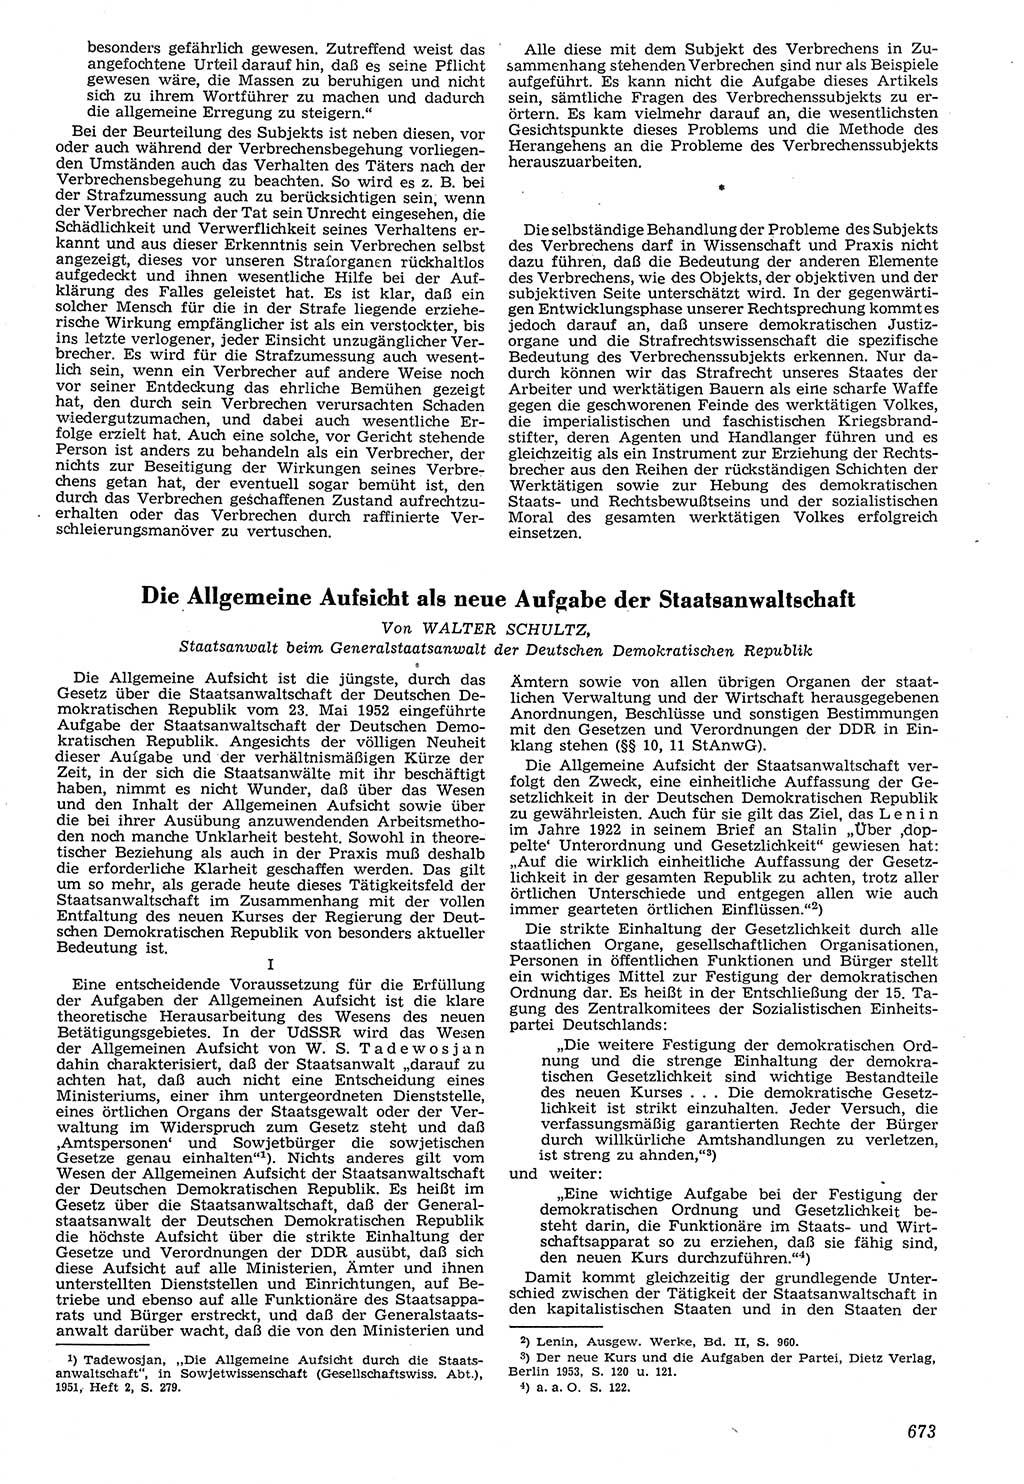 Neue Justiz (NJ), Zeitschrift für Recht und Rechtswissenschaft [Deutsche Demokratische Republik (DDR)], 7. Jahrgang 1953, Seite 673 (NJ DDR 1953, S. 673)